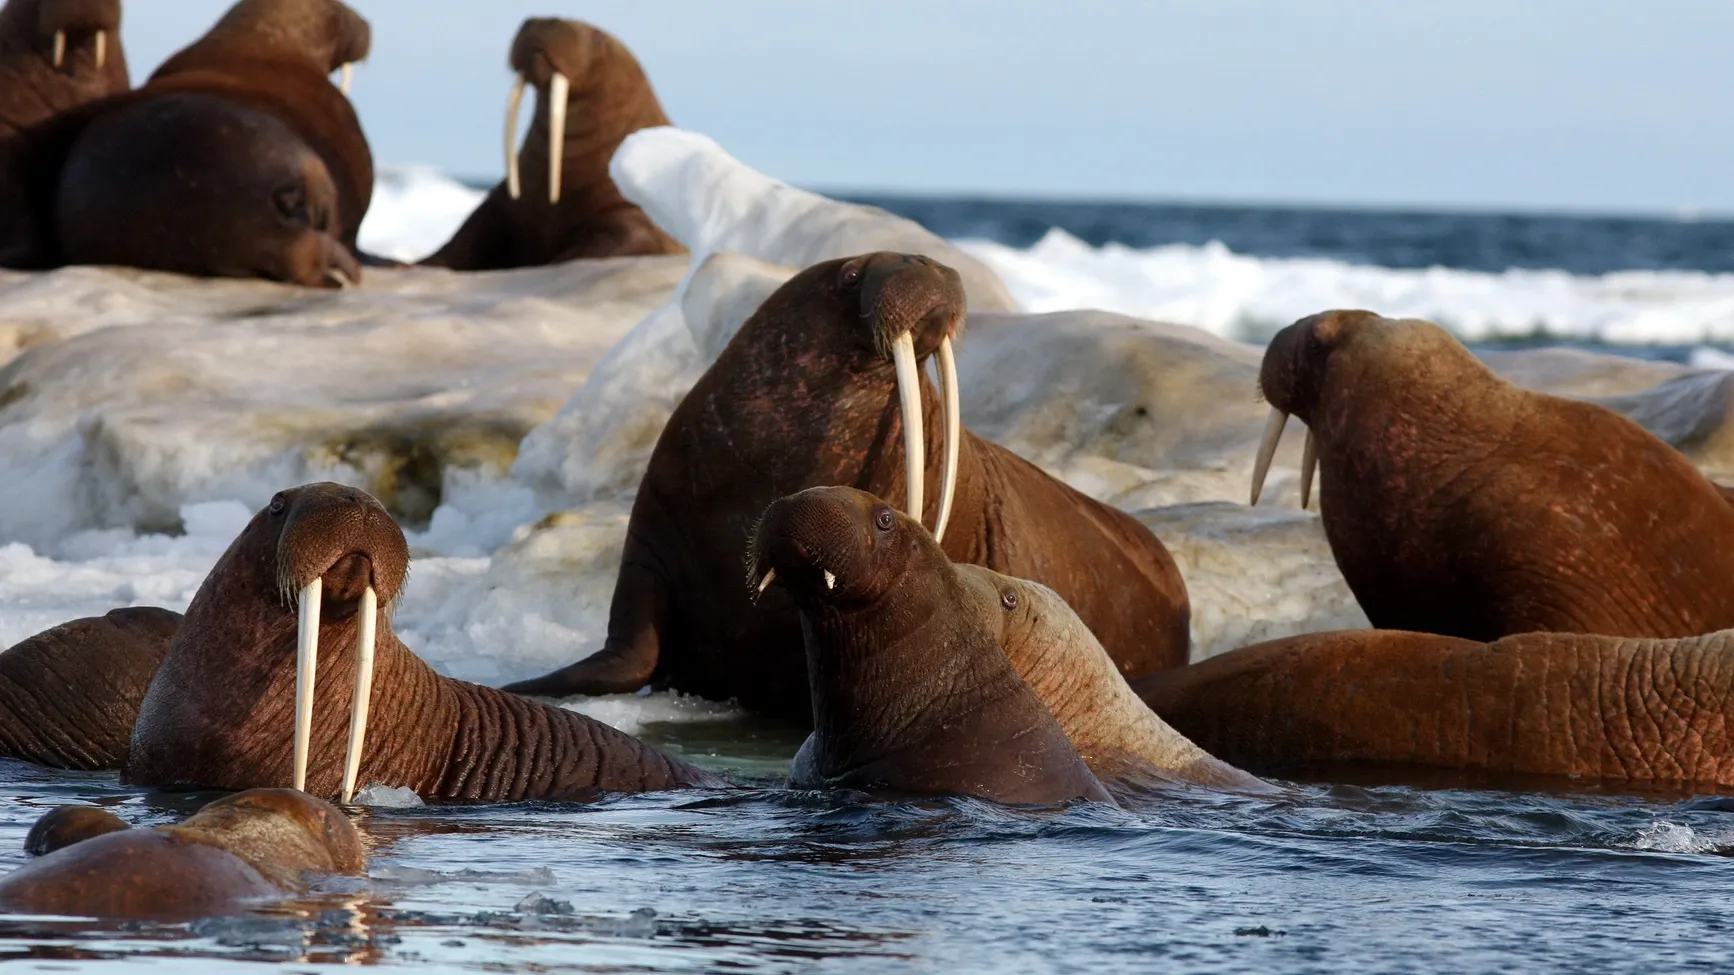 В будущем на Ямале могут организовать туры к лежбищу моржей. Фото: tryton2011/Shutterstock/Fotodom